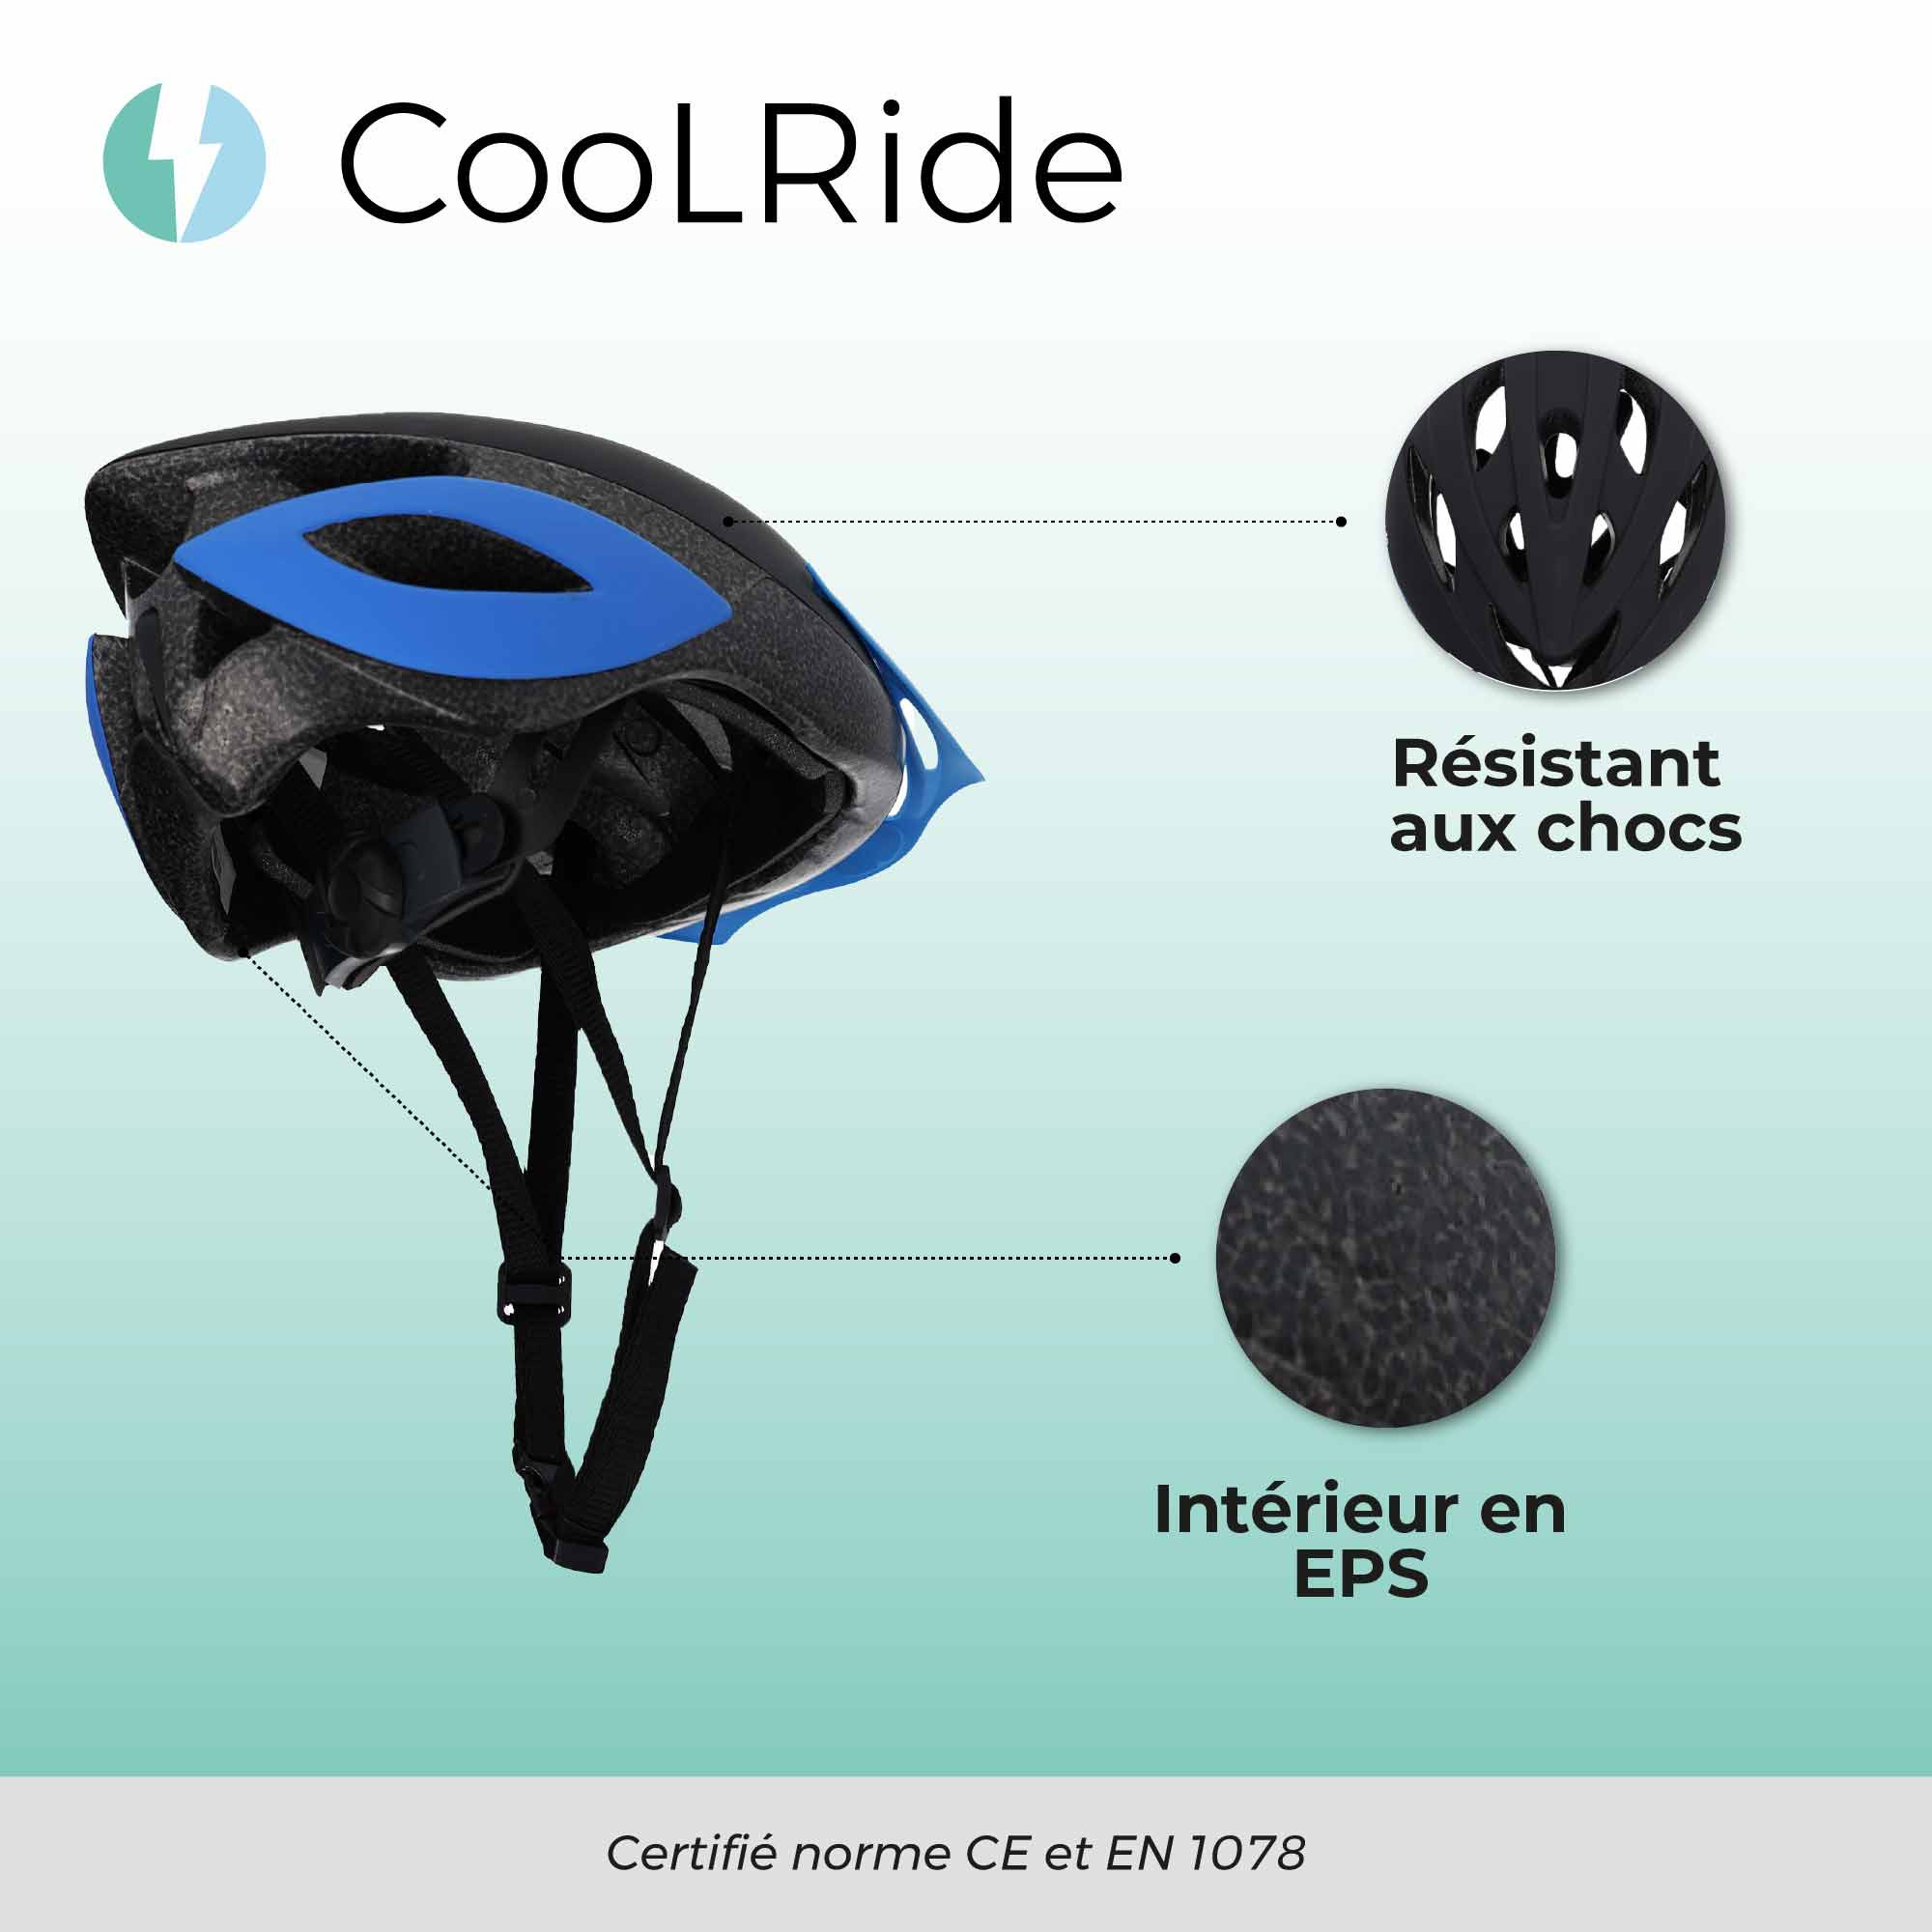 Cool ride CASQUE ADULTE AVEC HEADLOCK NOIR T 58-62 CM